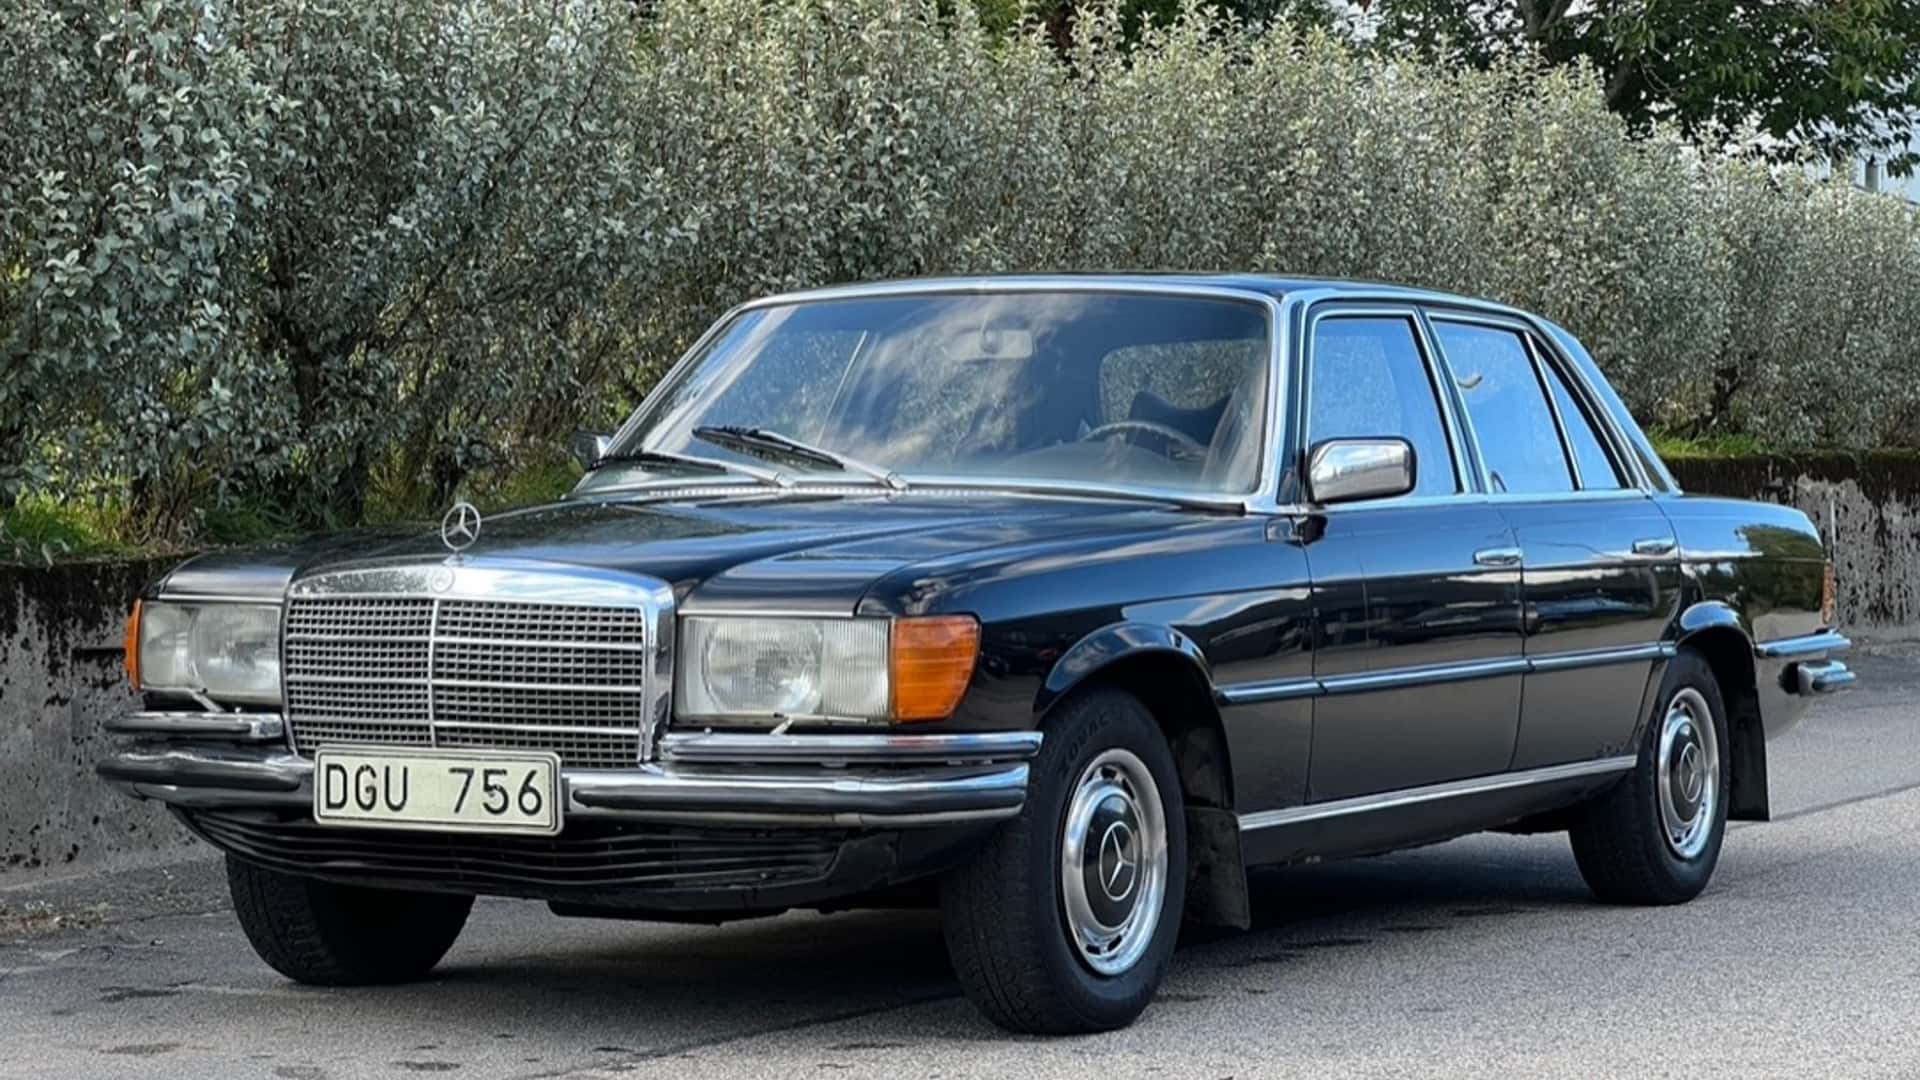 سيارة مرسيدس اس كلاس 1973 كانت مملوكة لملك السويد معروضة للبيع في مزاد 3